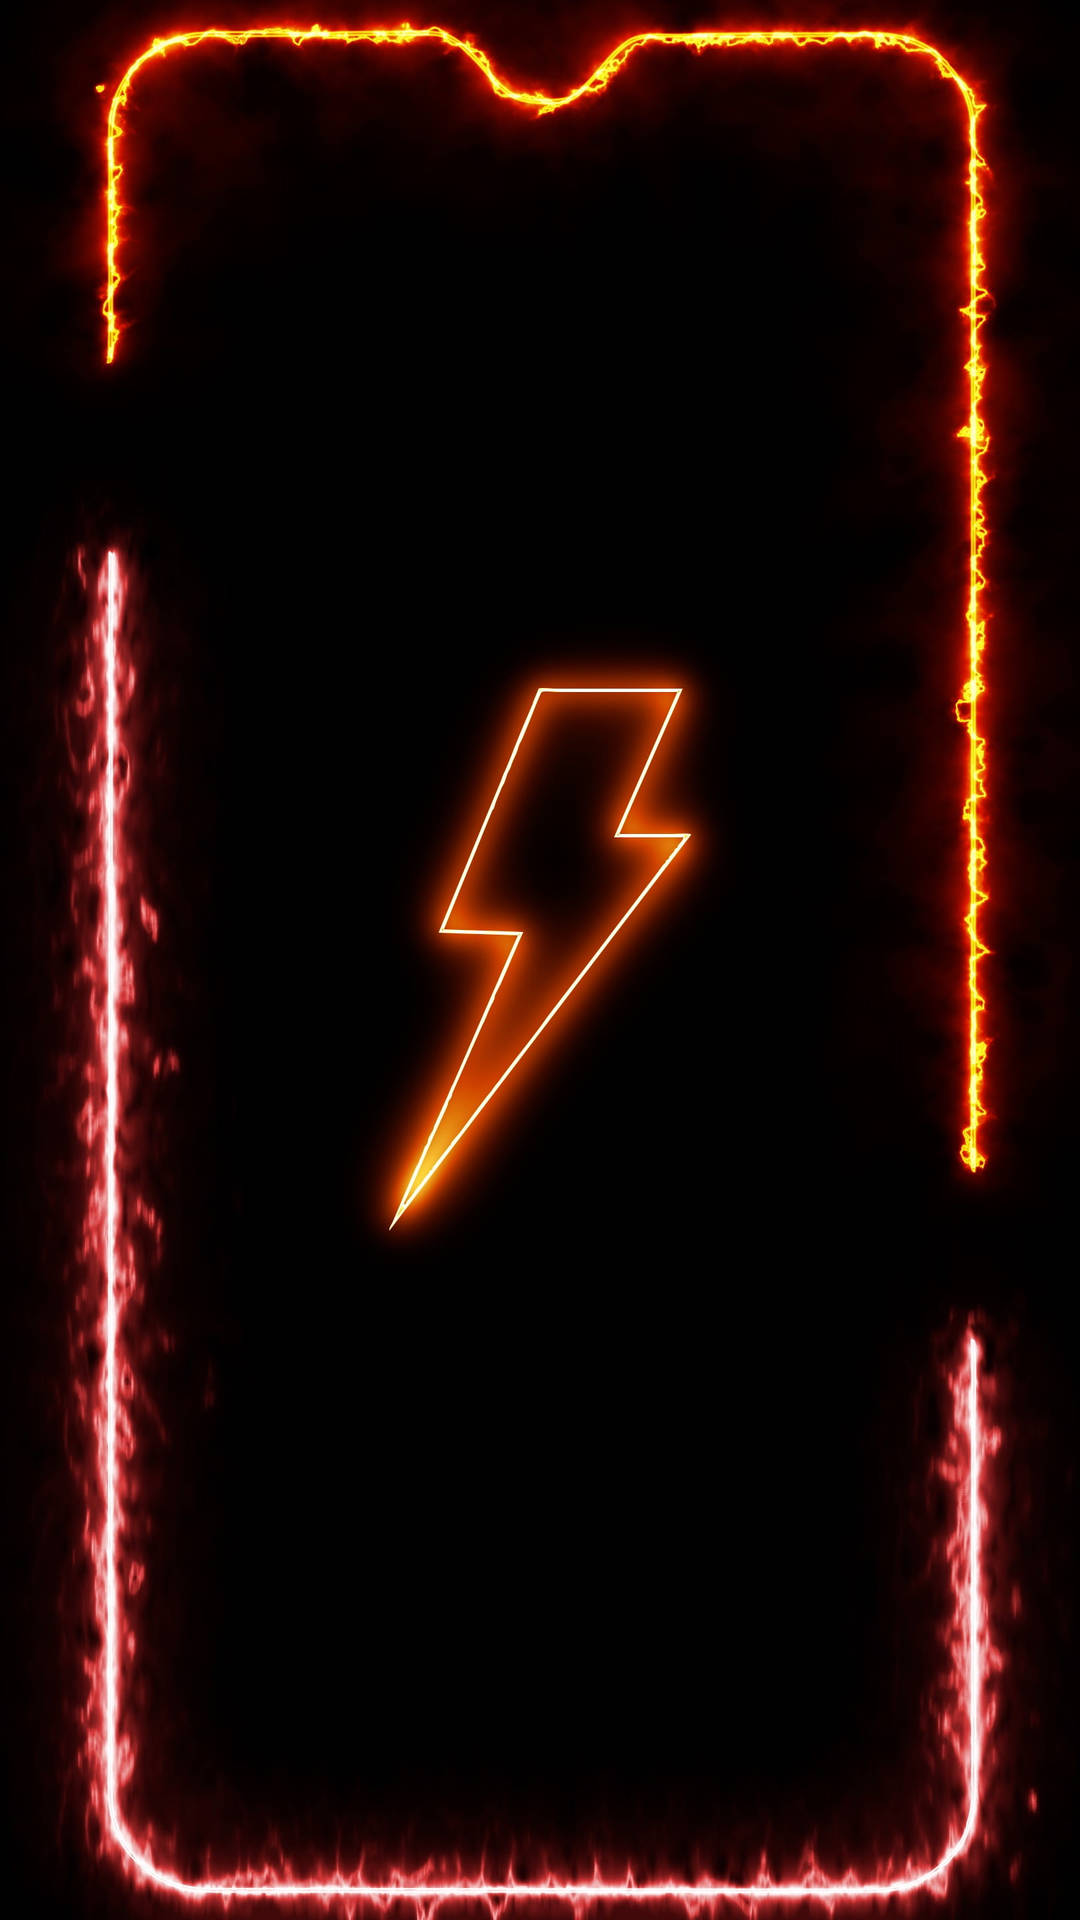 Neon Orange Aesthetic Lightning Bolt Phone Frame Wallpaper